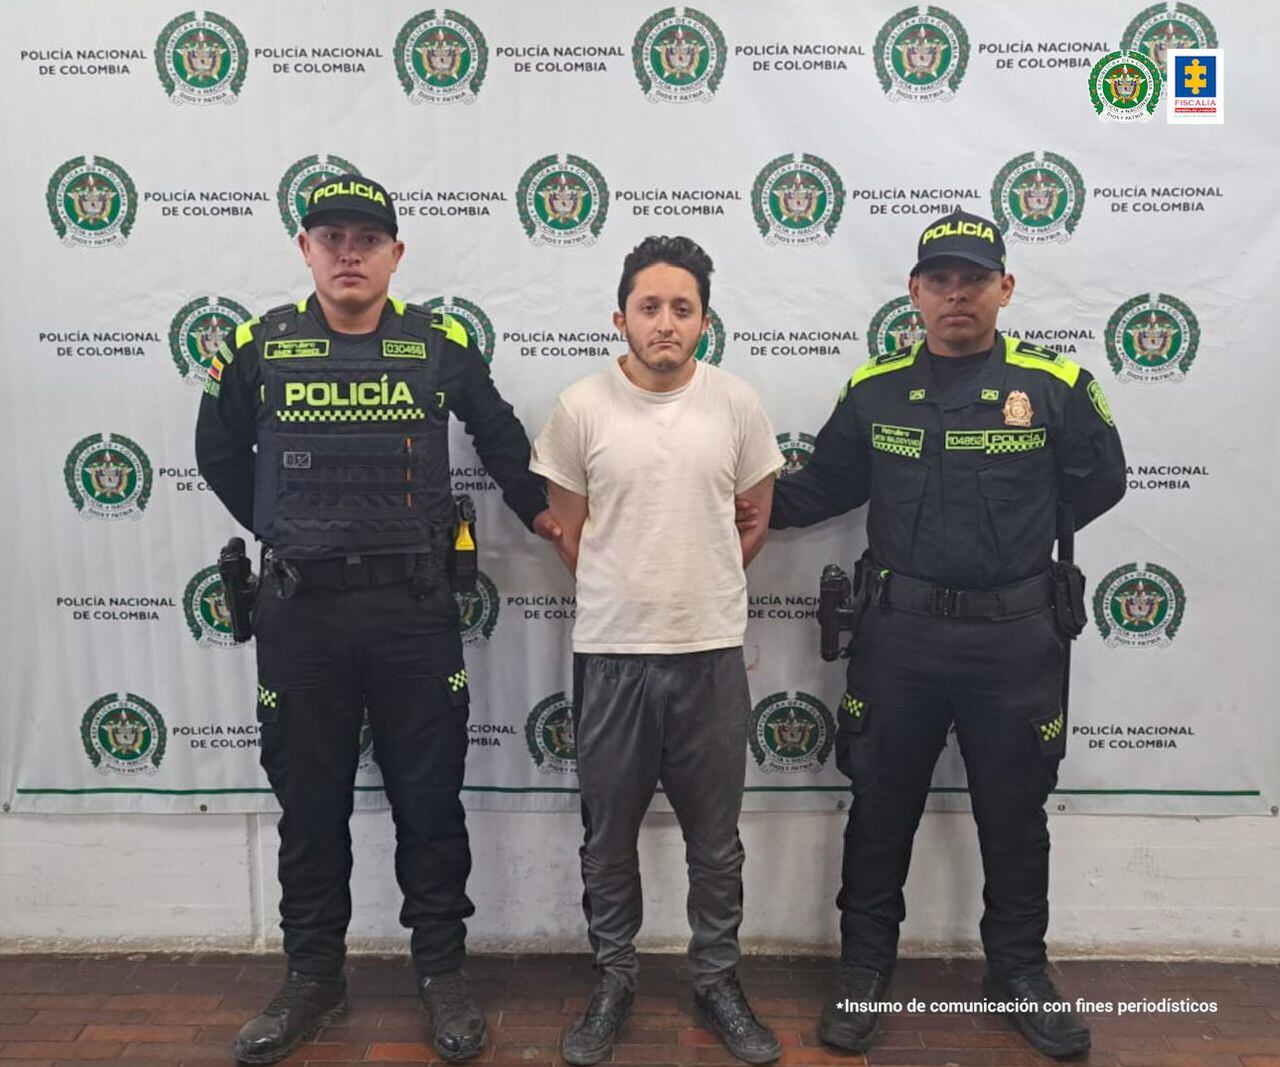 Álvaro Steven Rojas Cubillos fue enviado a un centro carcelario después de que un juez de control de garantías impusiera medida de aseguramiento en su contra como presunto responsable del homicidio de Flaminio Forigua Linares, un conductor del Sistema Integrado de Transporte de Bogotá (SITP).